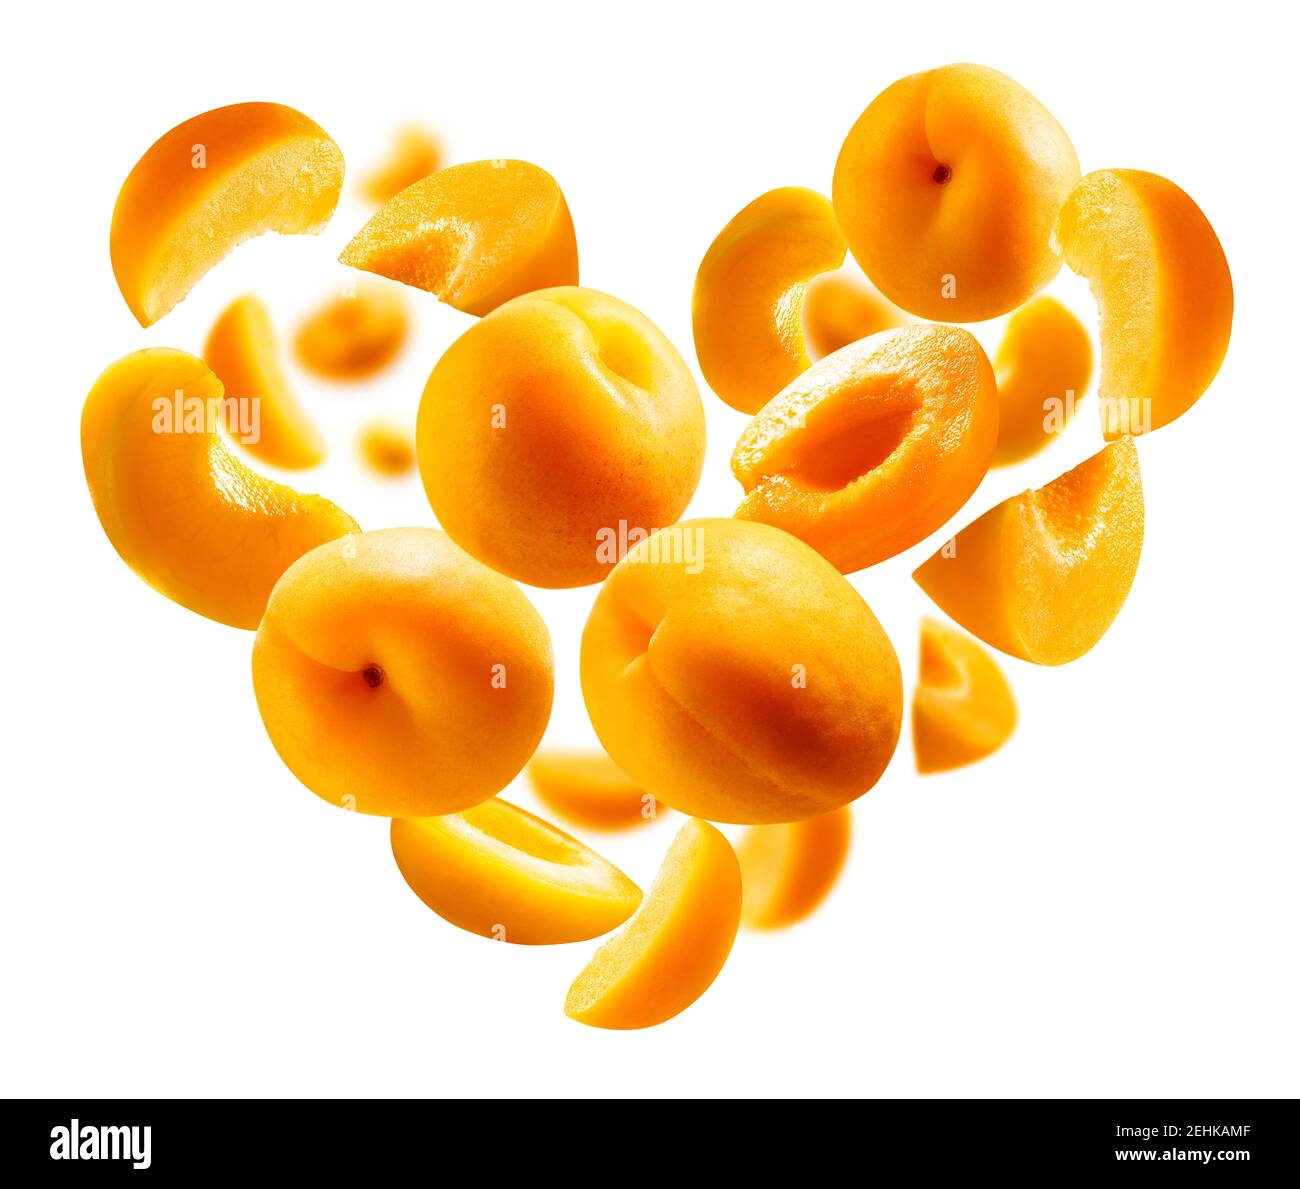 Abricots en forme de coeur sur fond blanc. Fruits mûrs en vol Banque D'Images